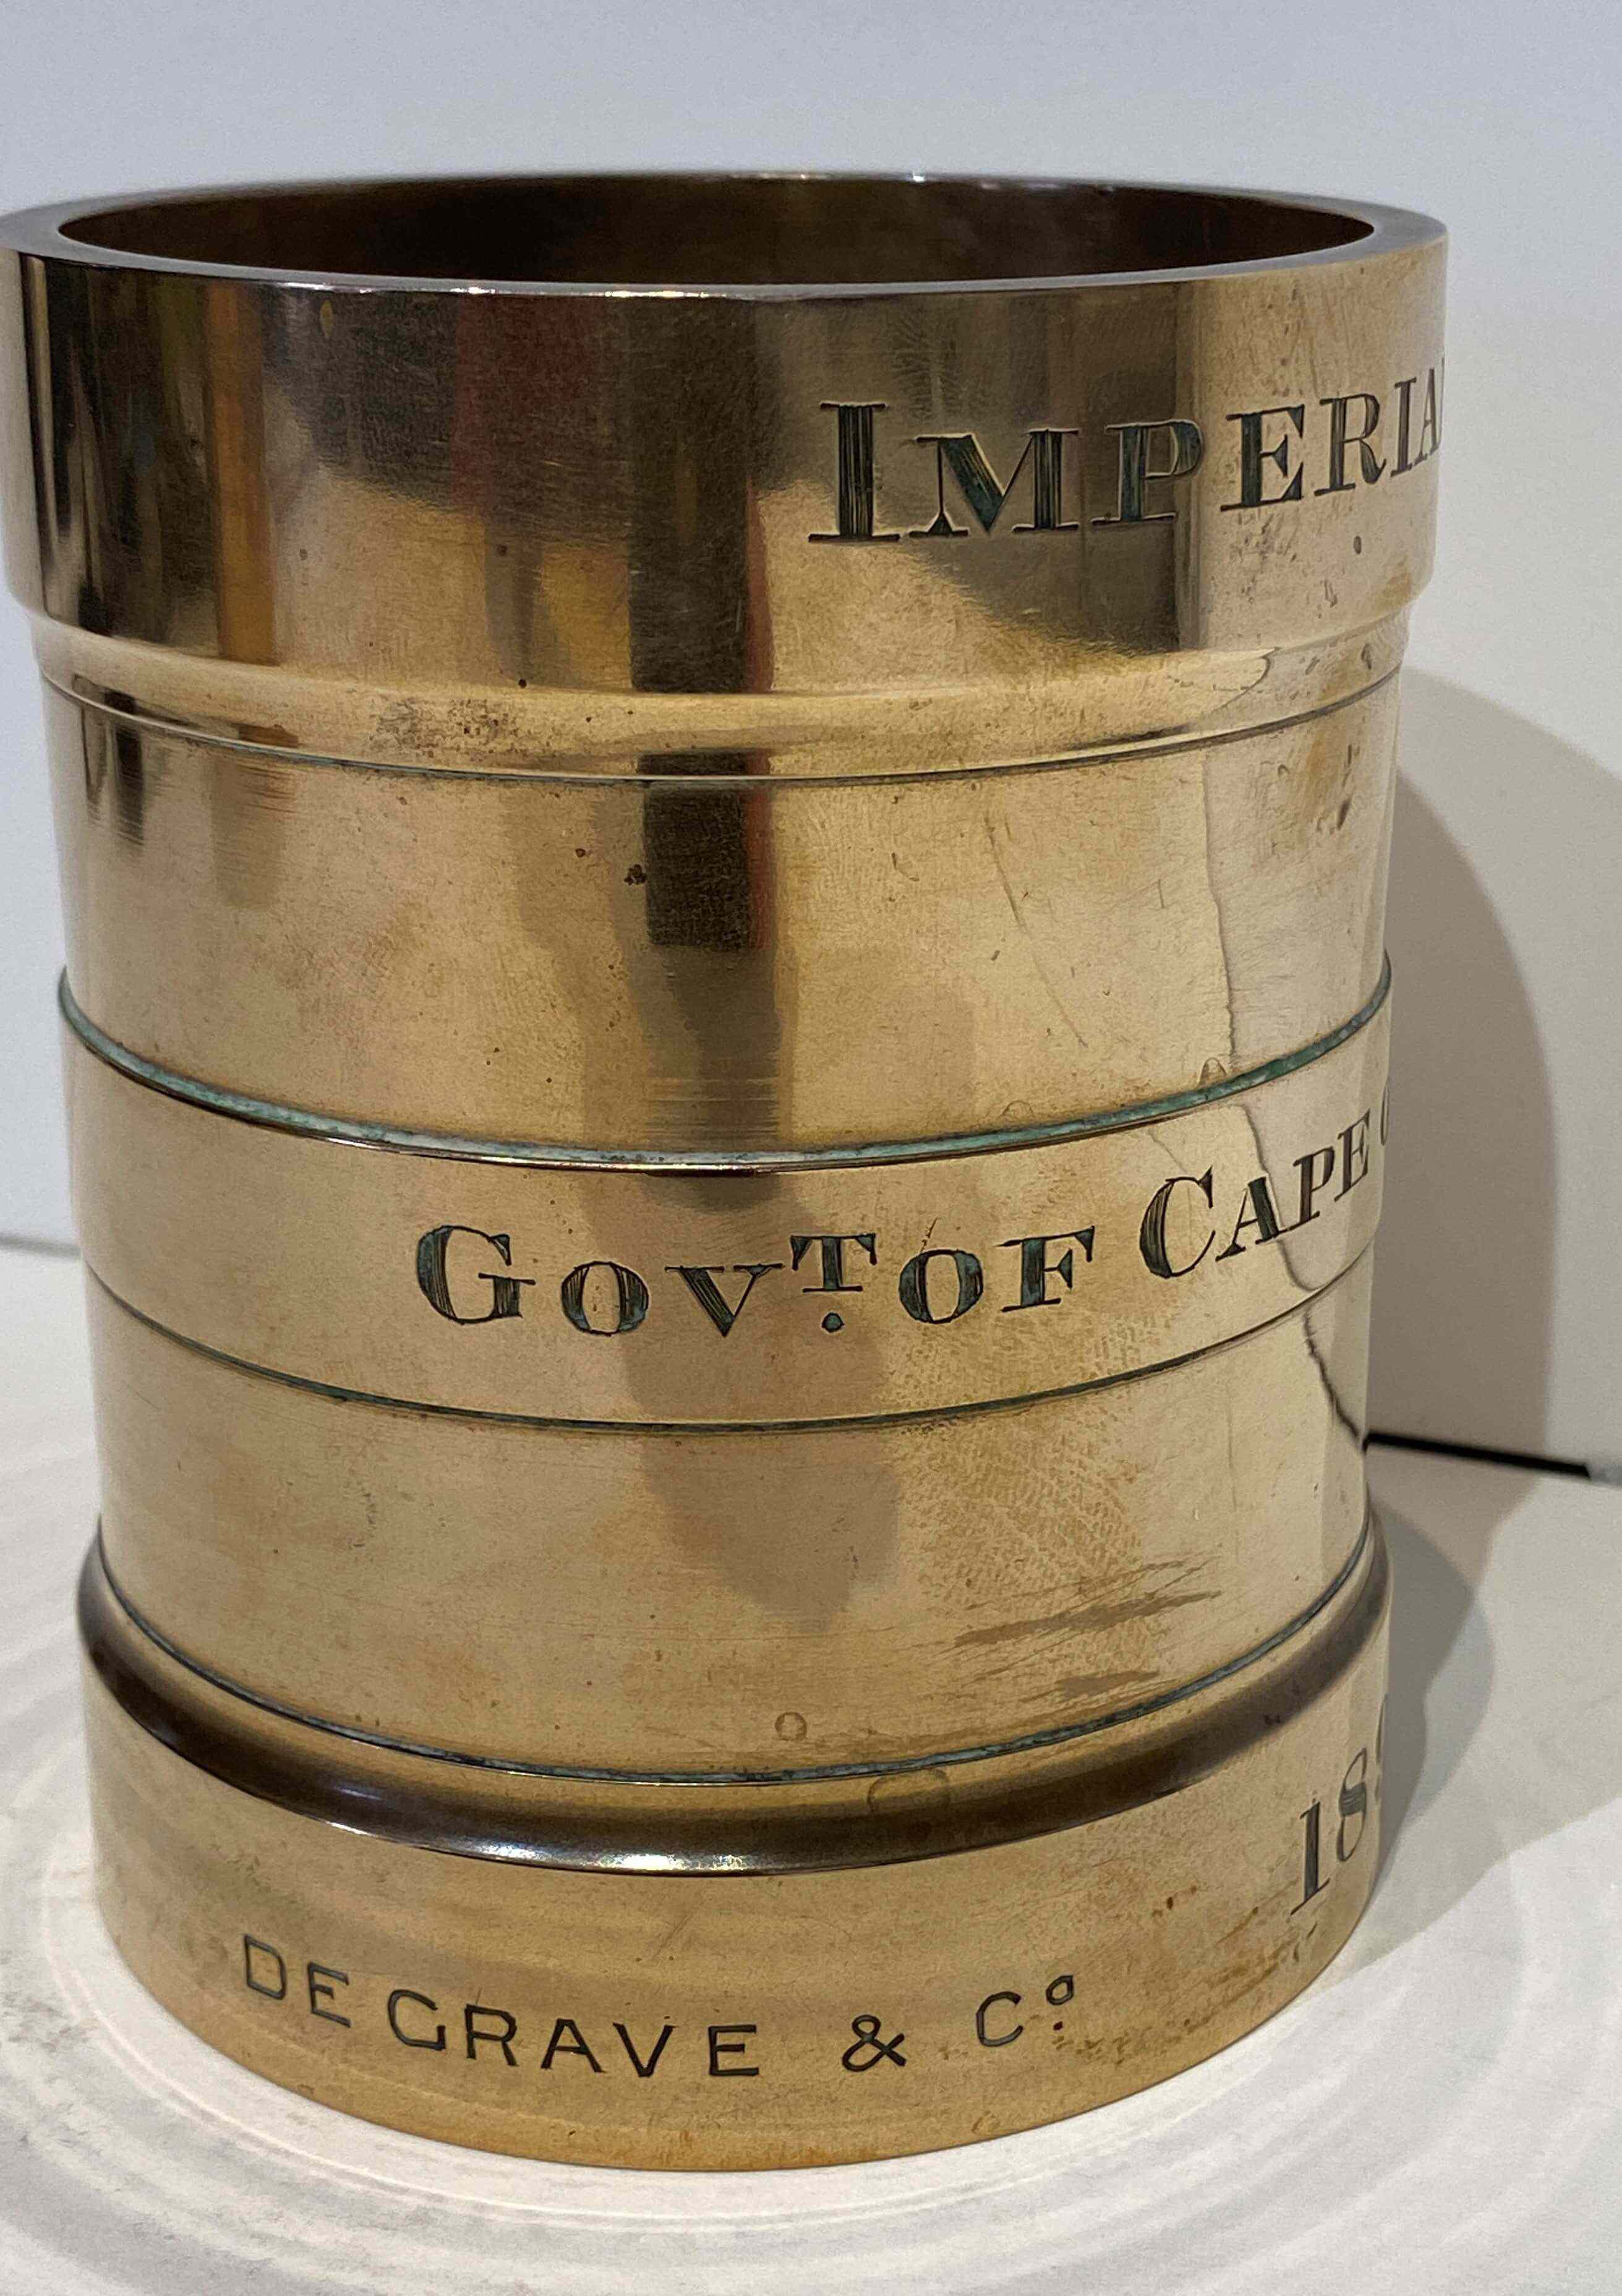 A Cape of Good Hope Imperial Pint brass measure, De Grave & Co, London, 1895